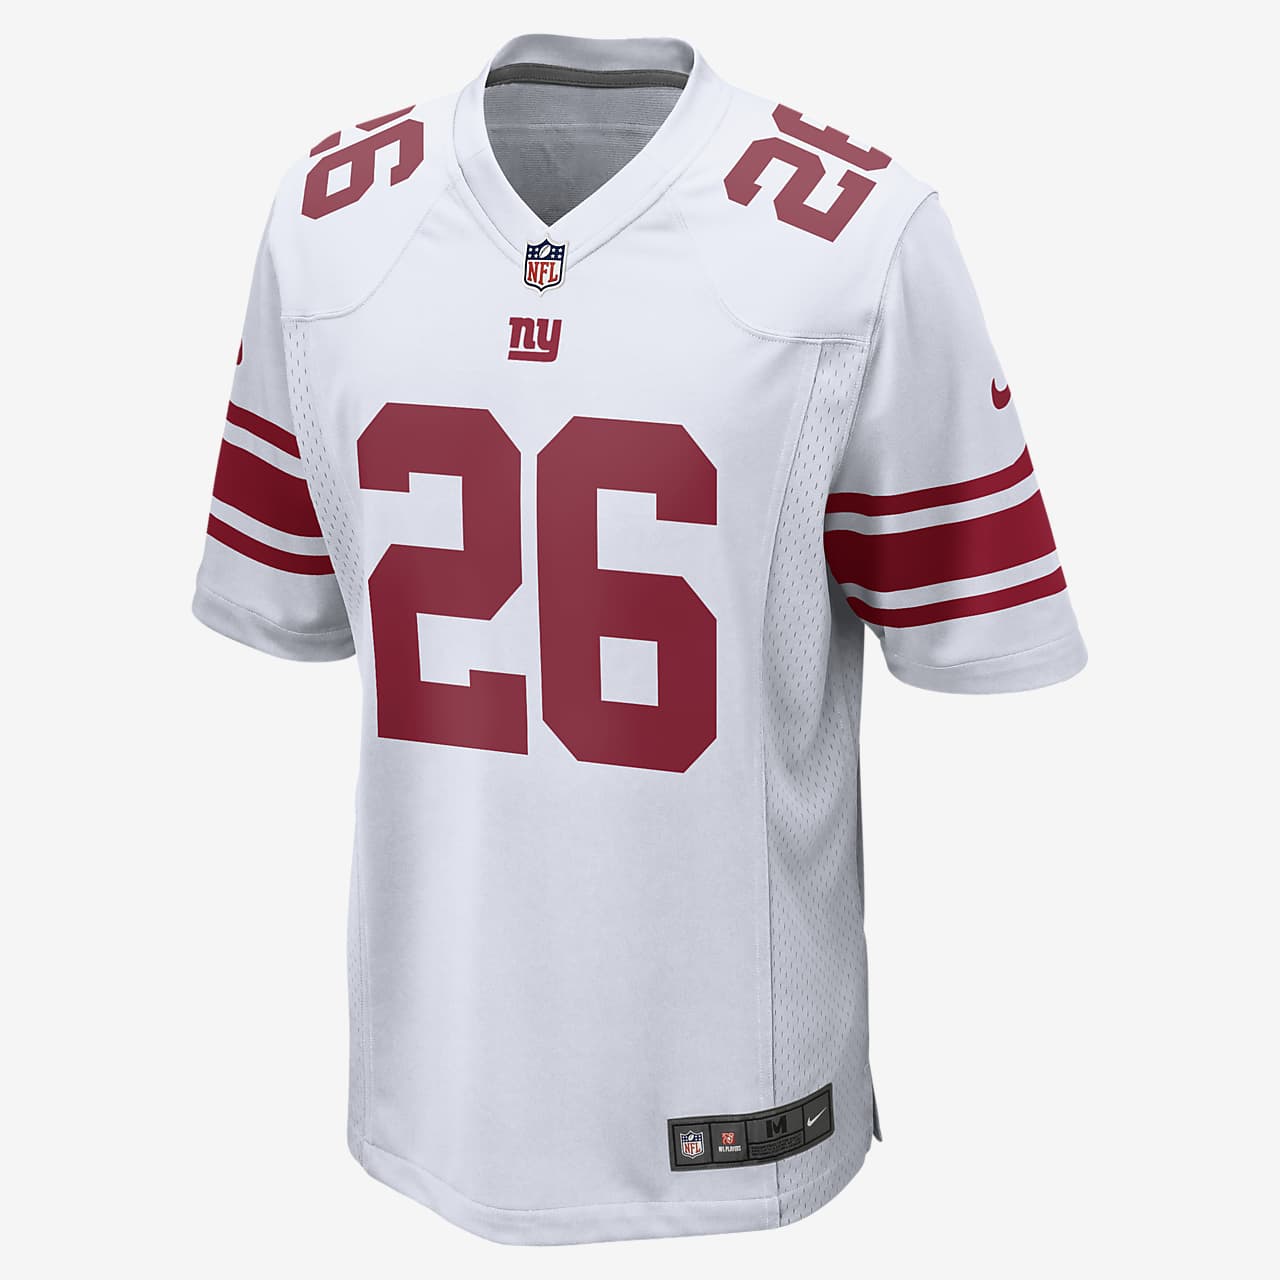 Interacción ponerse en cuclillas caloría Camiseta de fútbol americano para hombre NFL New York Giants Game. Nike.com